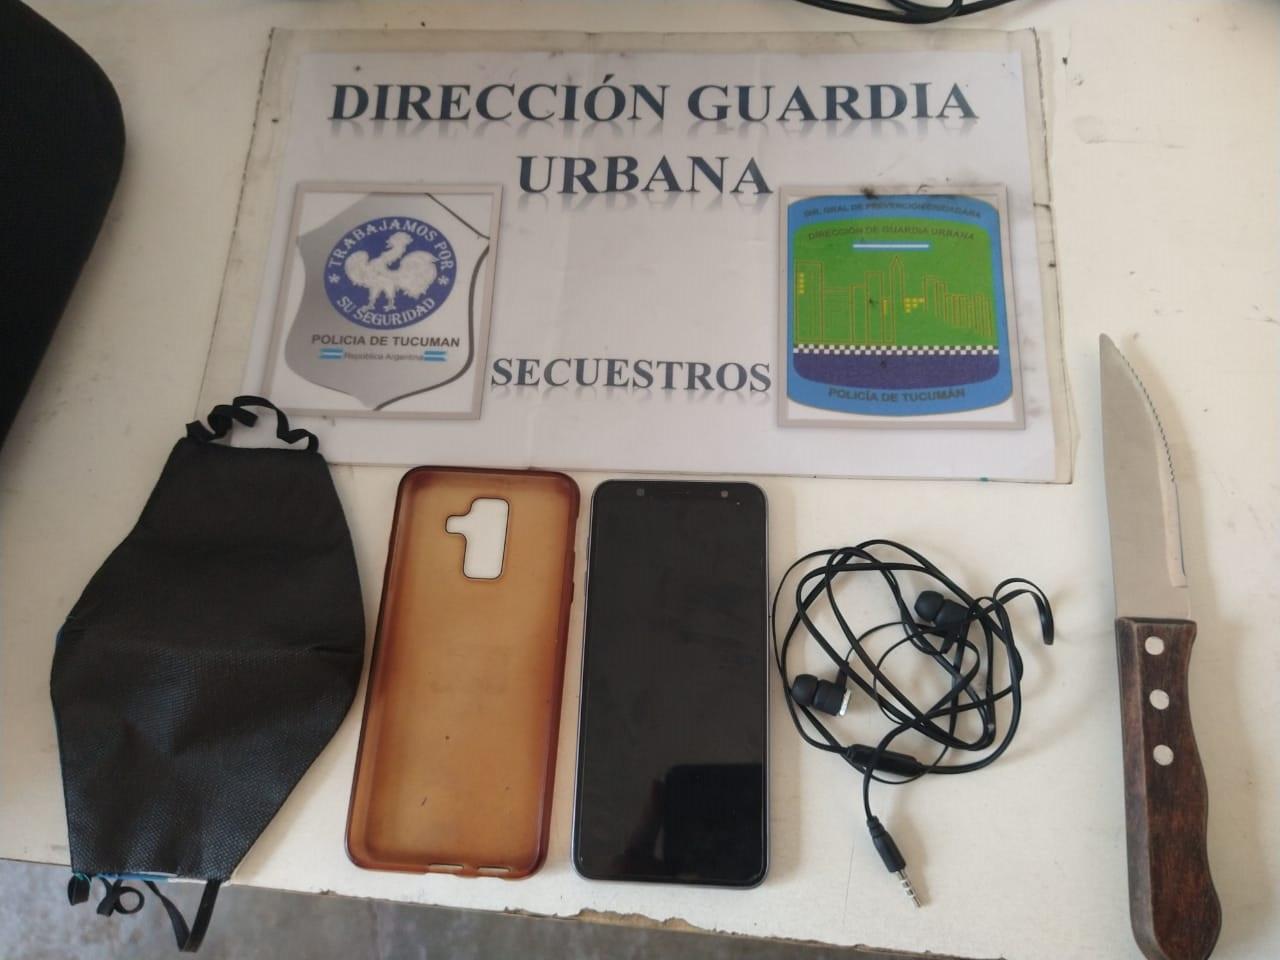 LOS OBJETOS SUSTRAIDOS. La Policía secuestró el celular de la víctima y el cuchillo del ladrón. Foto: Ministerio de Seguridad